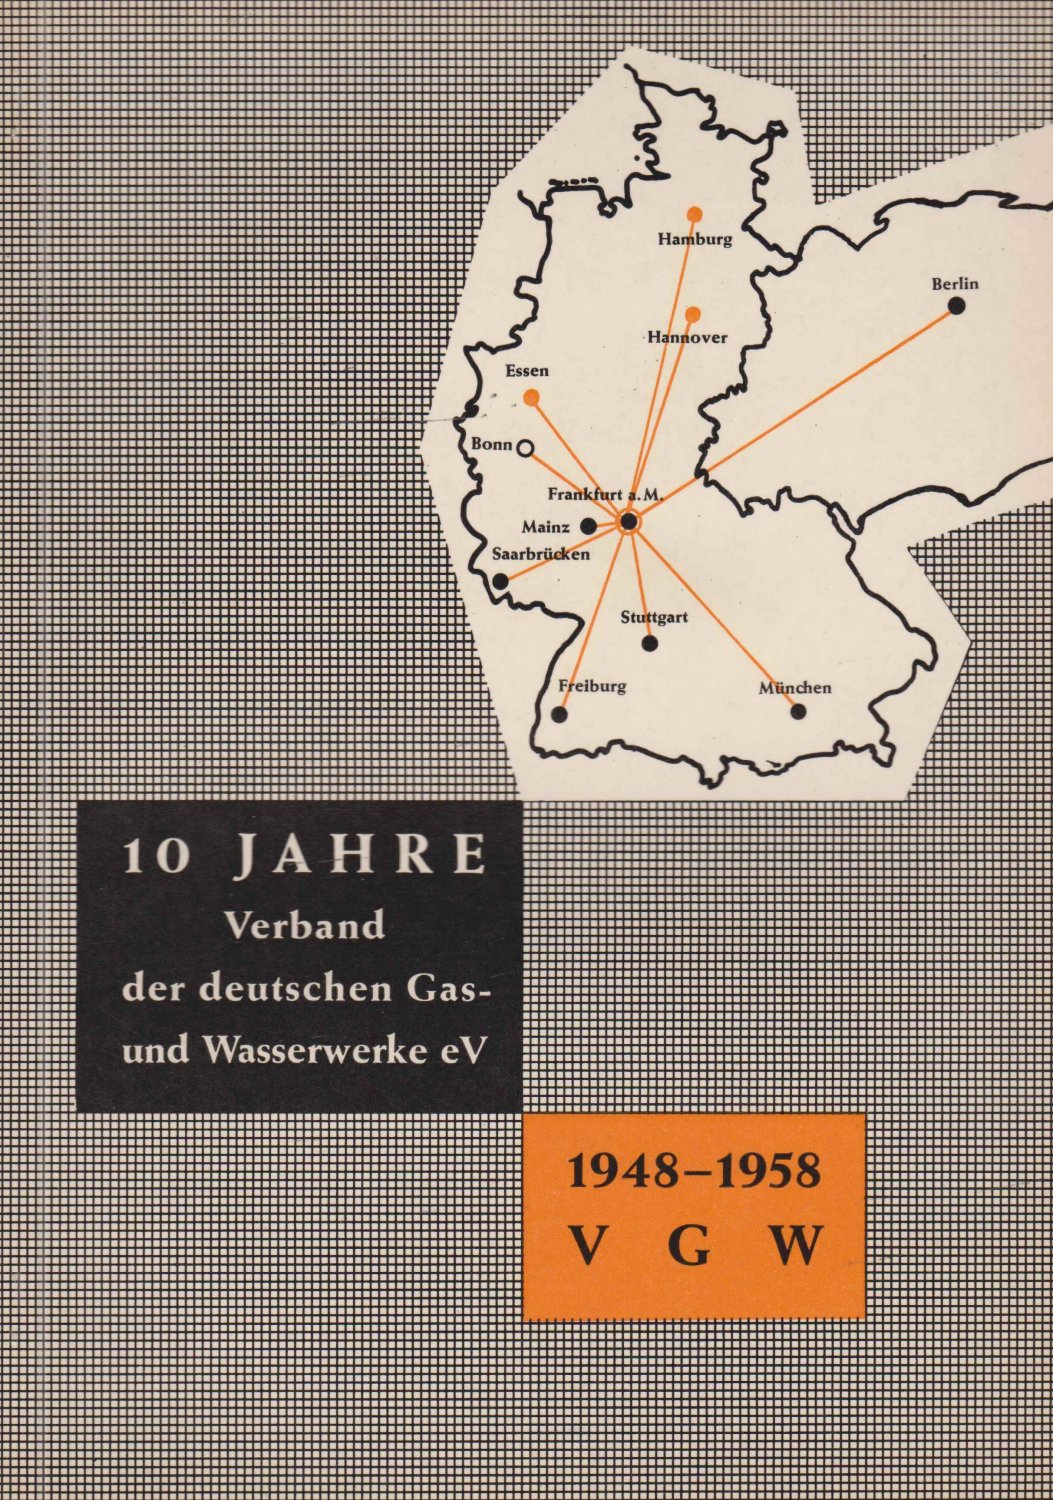 Gas- und Wasserwerke. -  Verband der deutschen Gas- und Wasserwerke e. V. 1948-1958. 